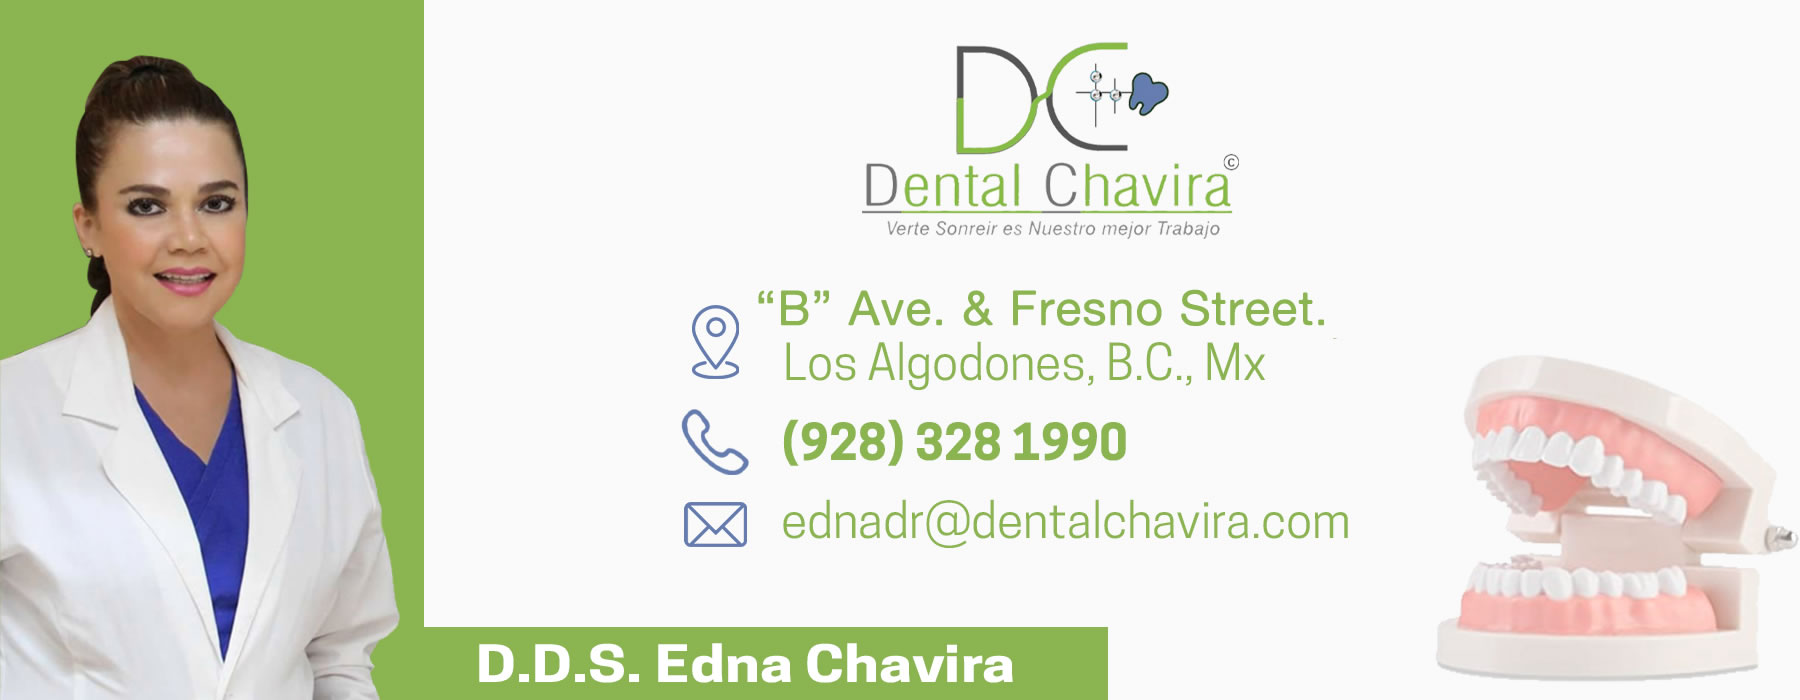  Dra. Edna Chavira Dental